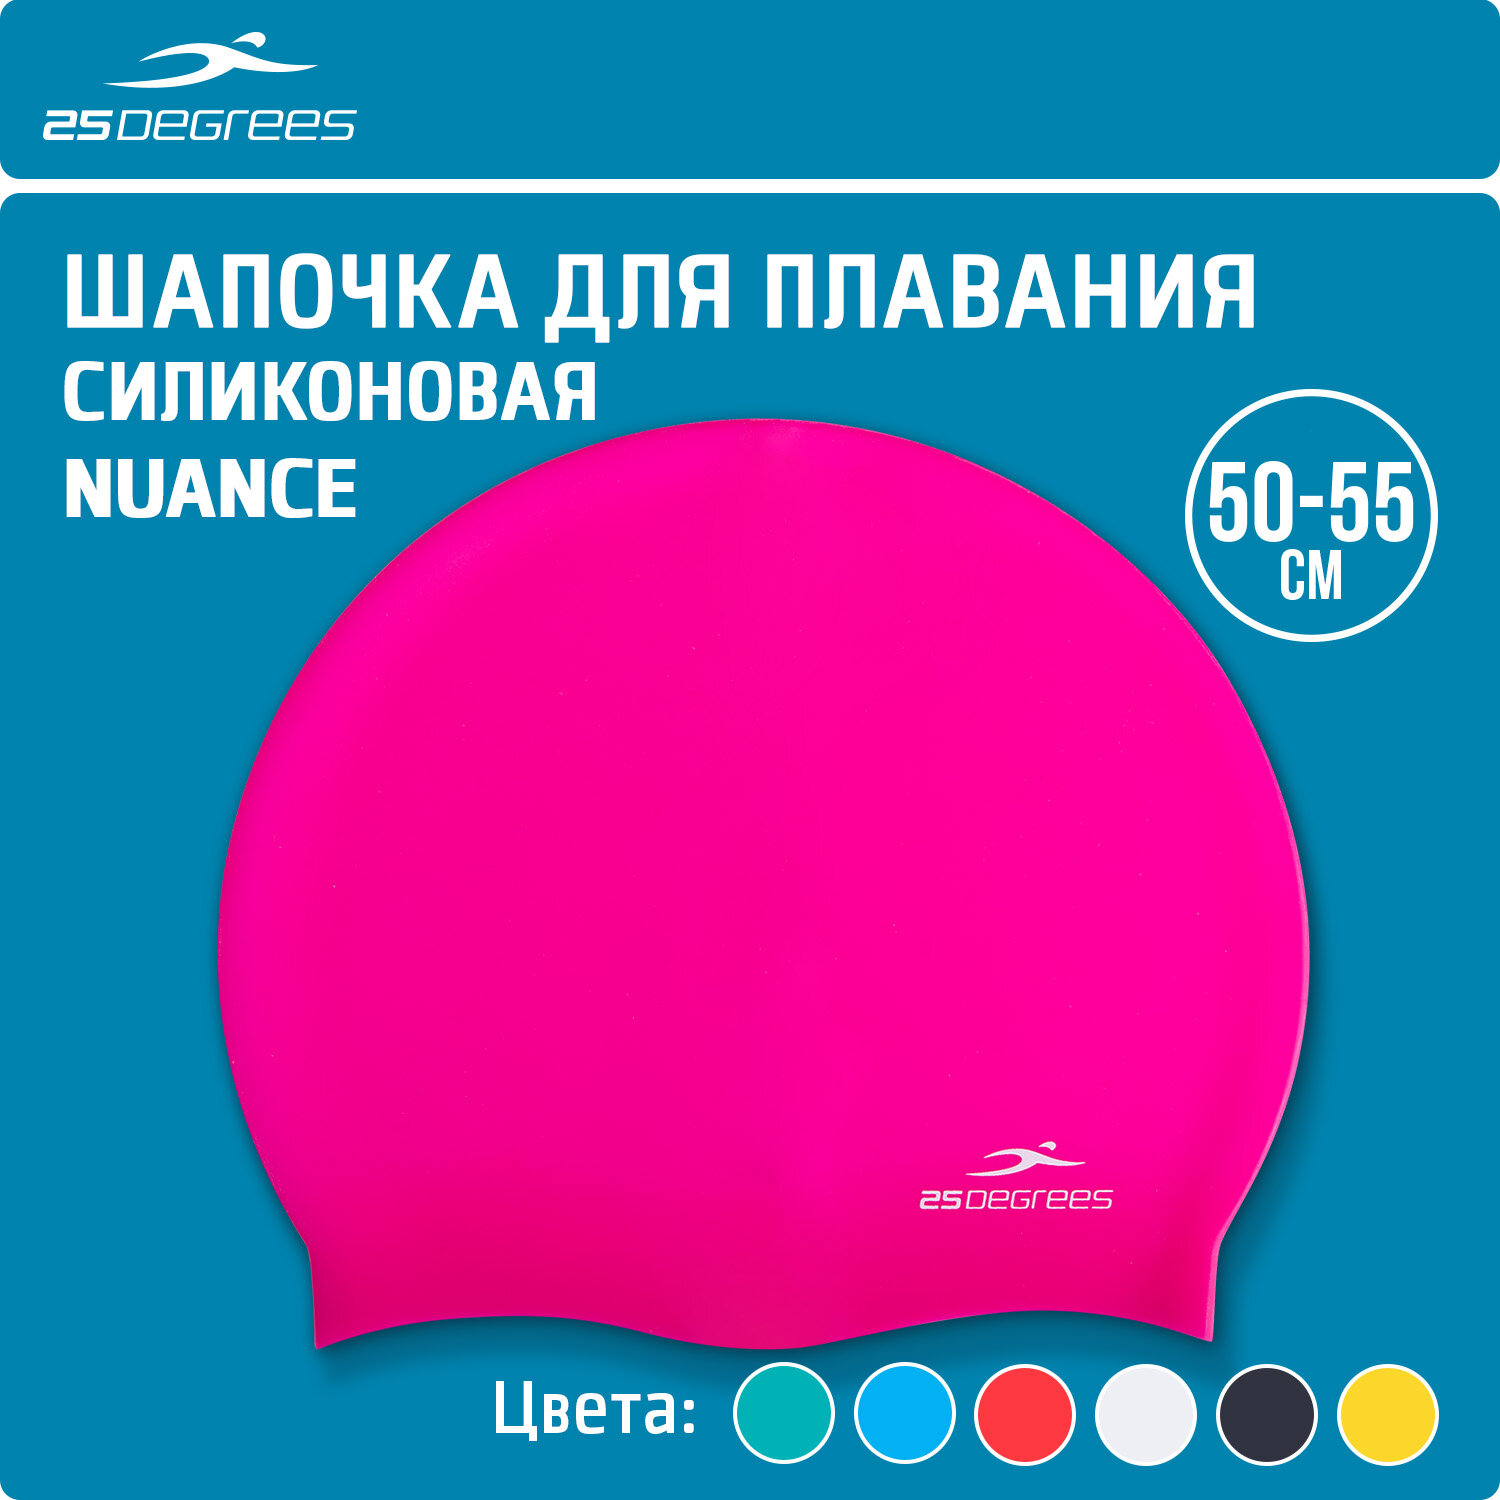 Шапочка для плавания 25DEGREES Nuance Pink 25D21004J, силикон, подростковый